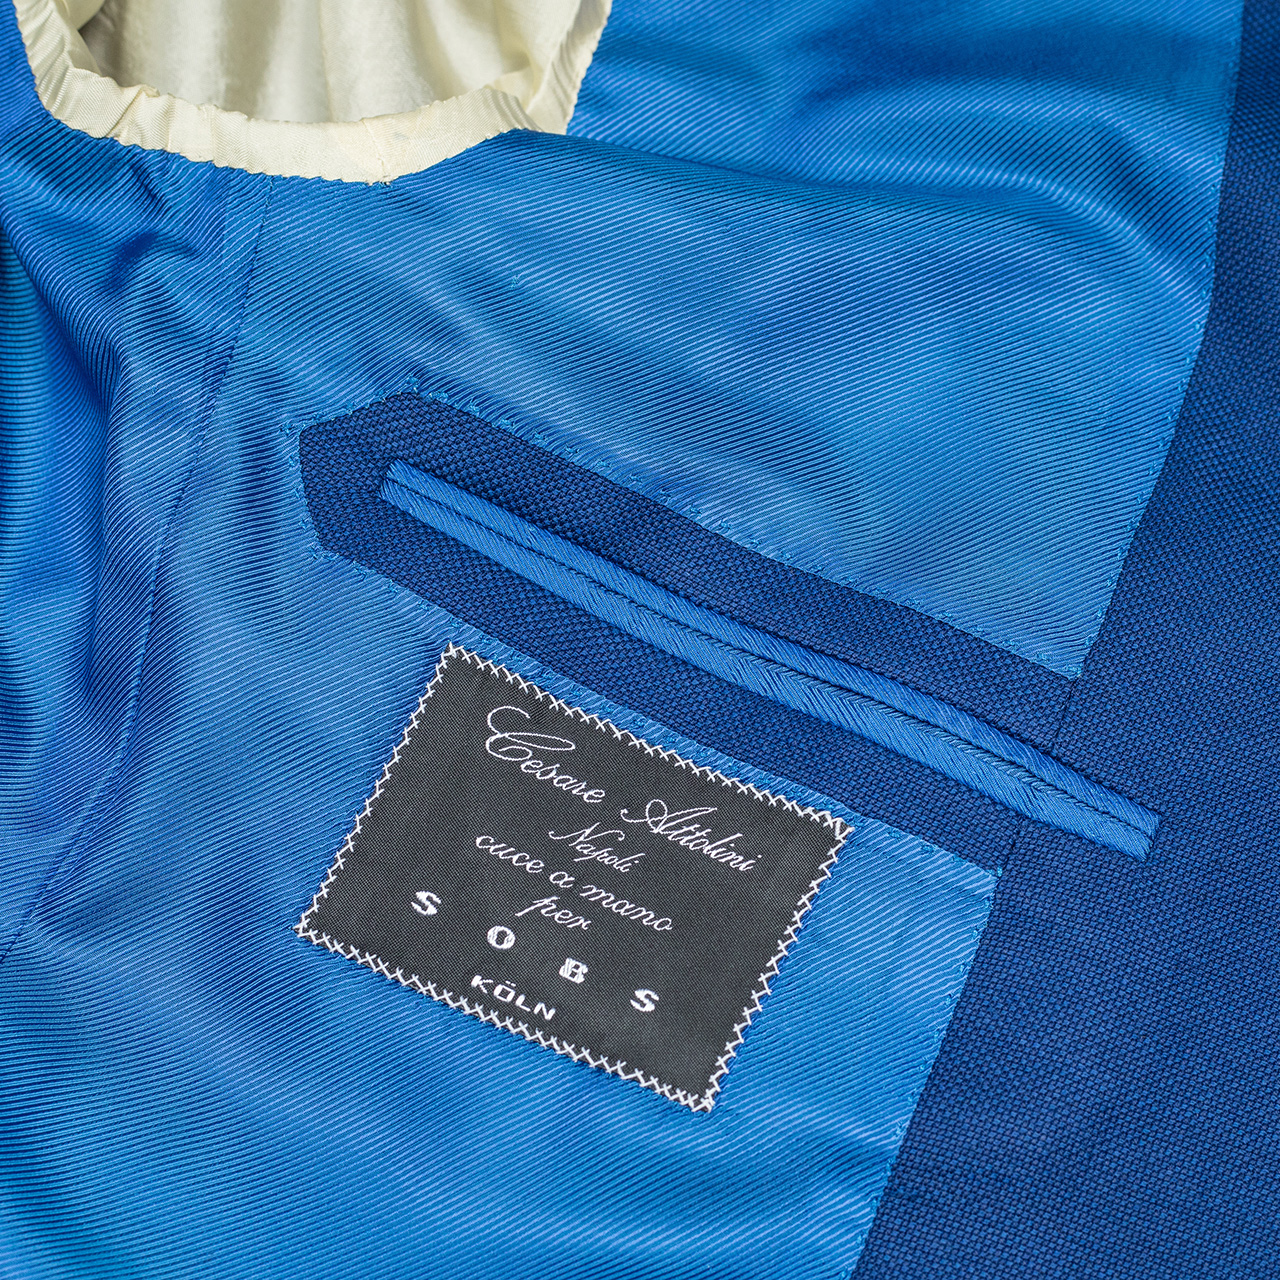 Cesare Attolini Sakko in napoliblau strukturiert mit 3 aufgesetzten Taschen